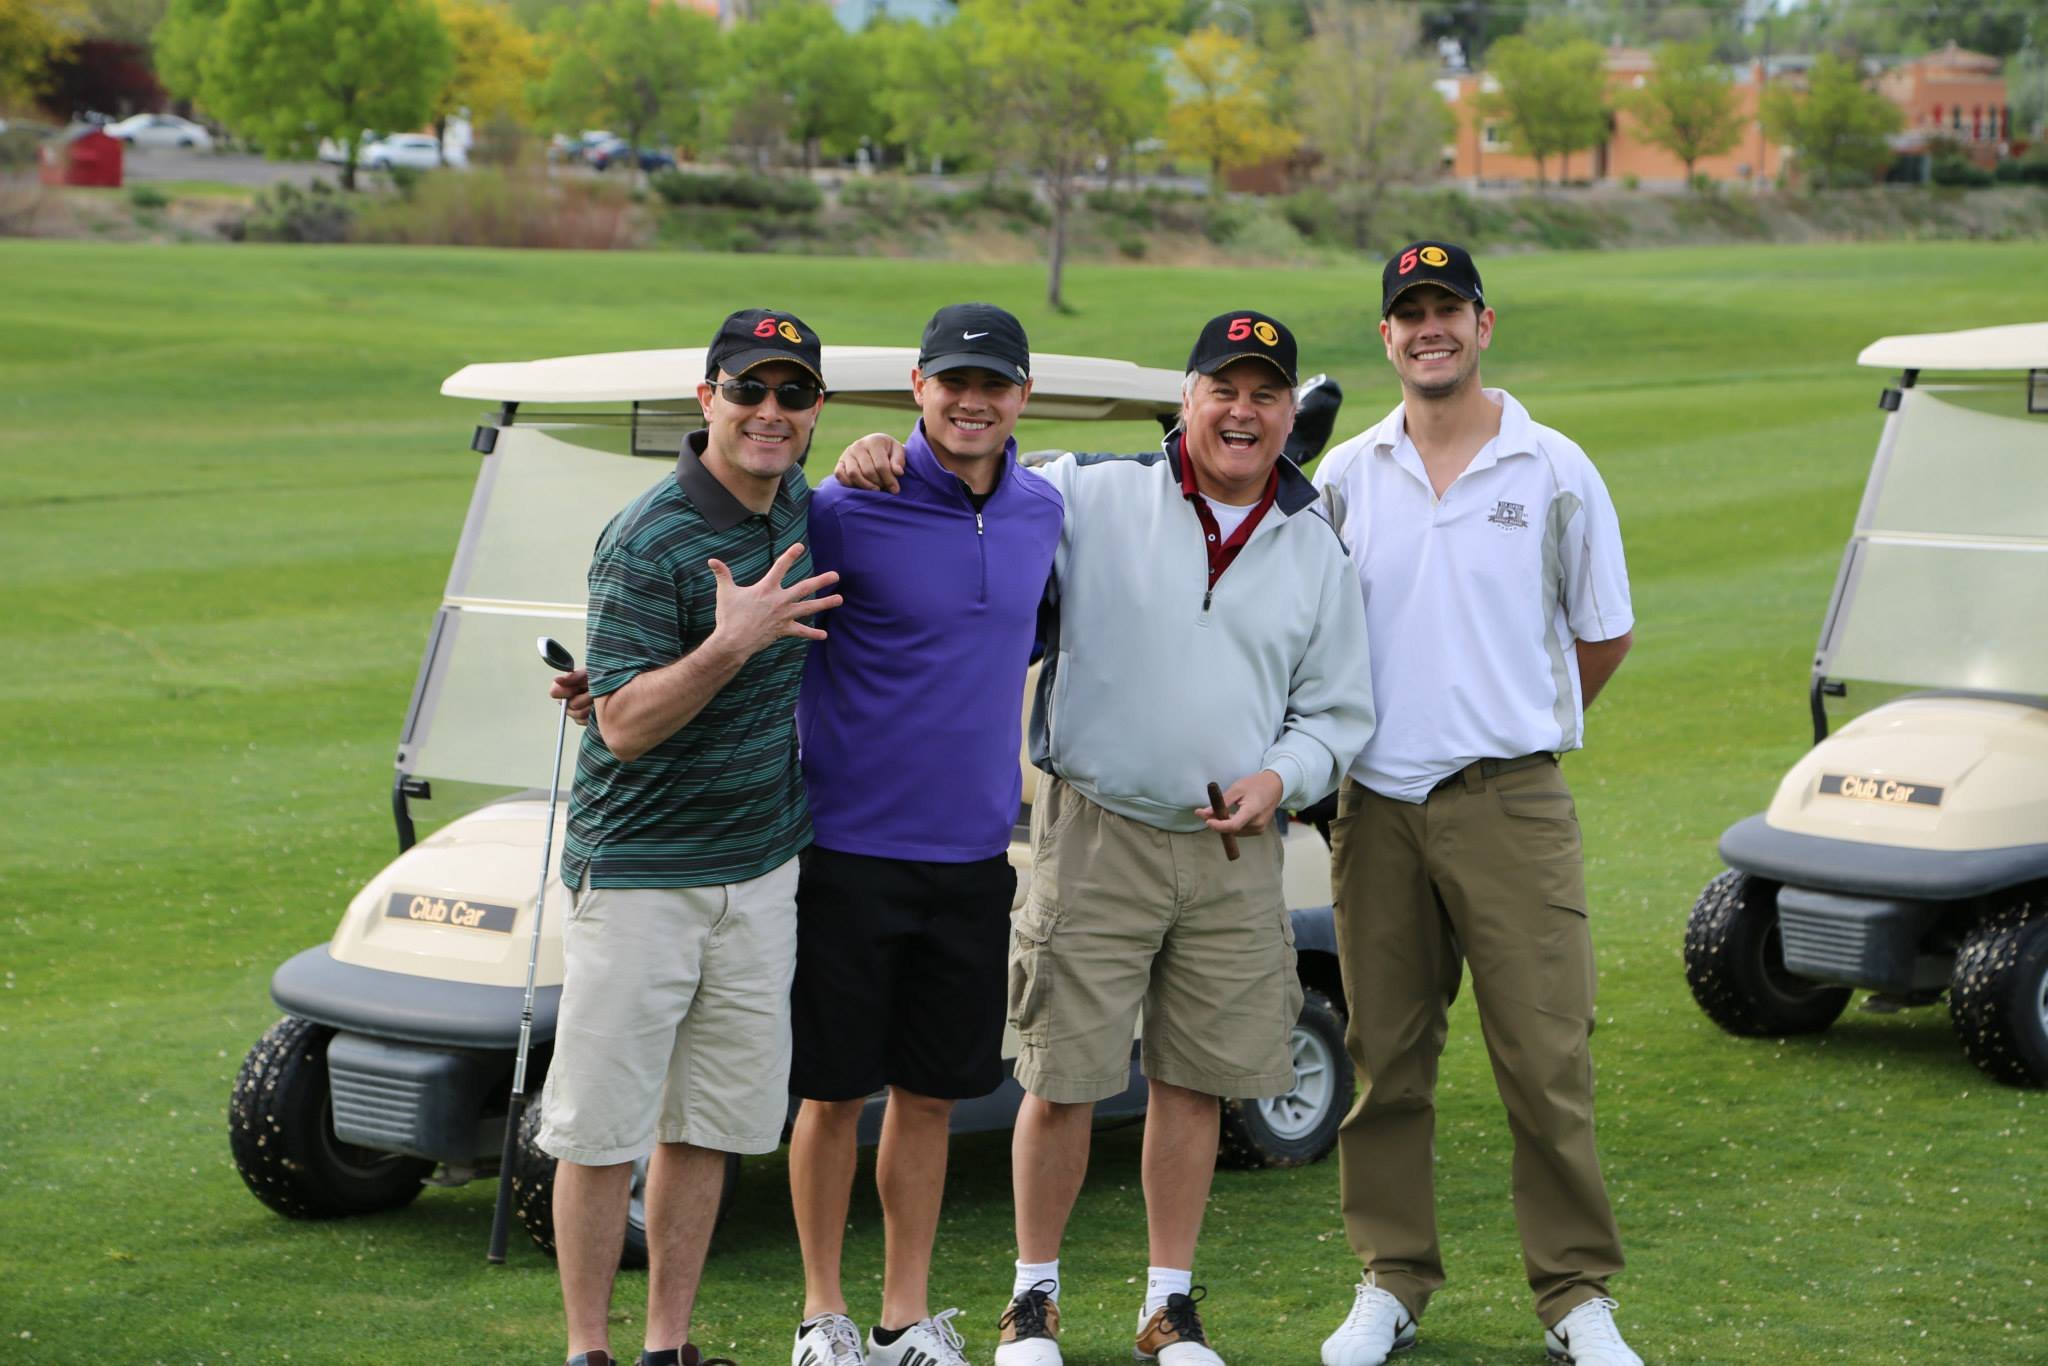 Testicular Cancer Golf Tournament